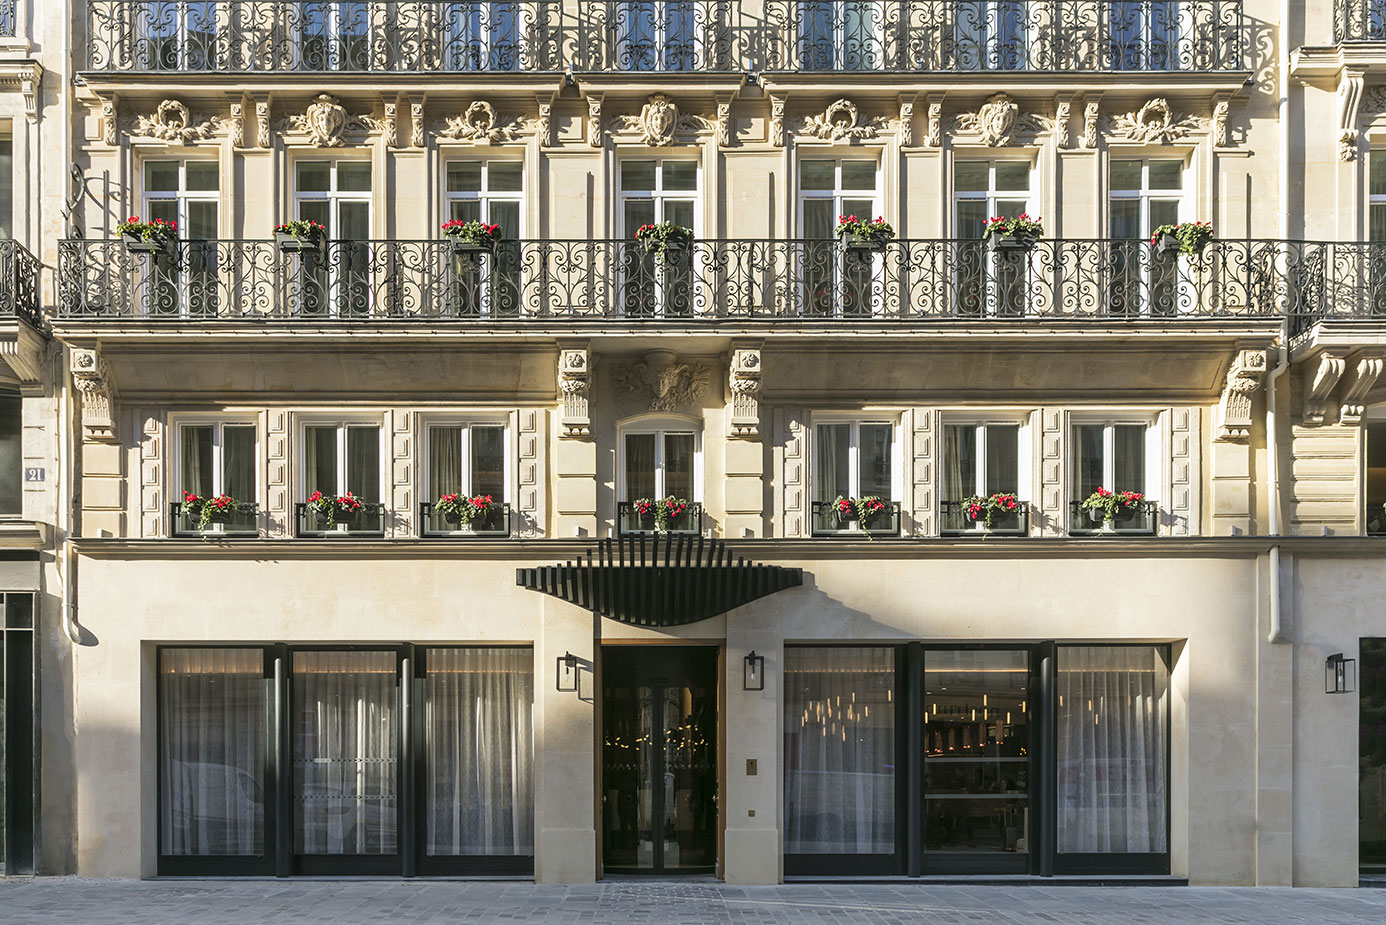 Façade de l'Hôtel Maison Albar Paris Céline. mars 2017 PLUMEVOYAGE @plumevoyagemagazine © Jérome Galland